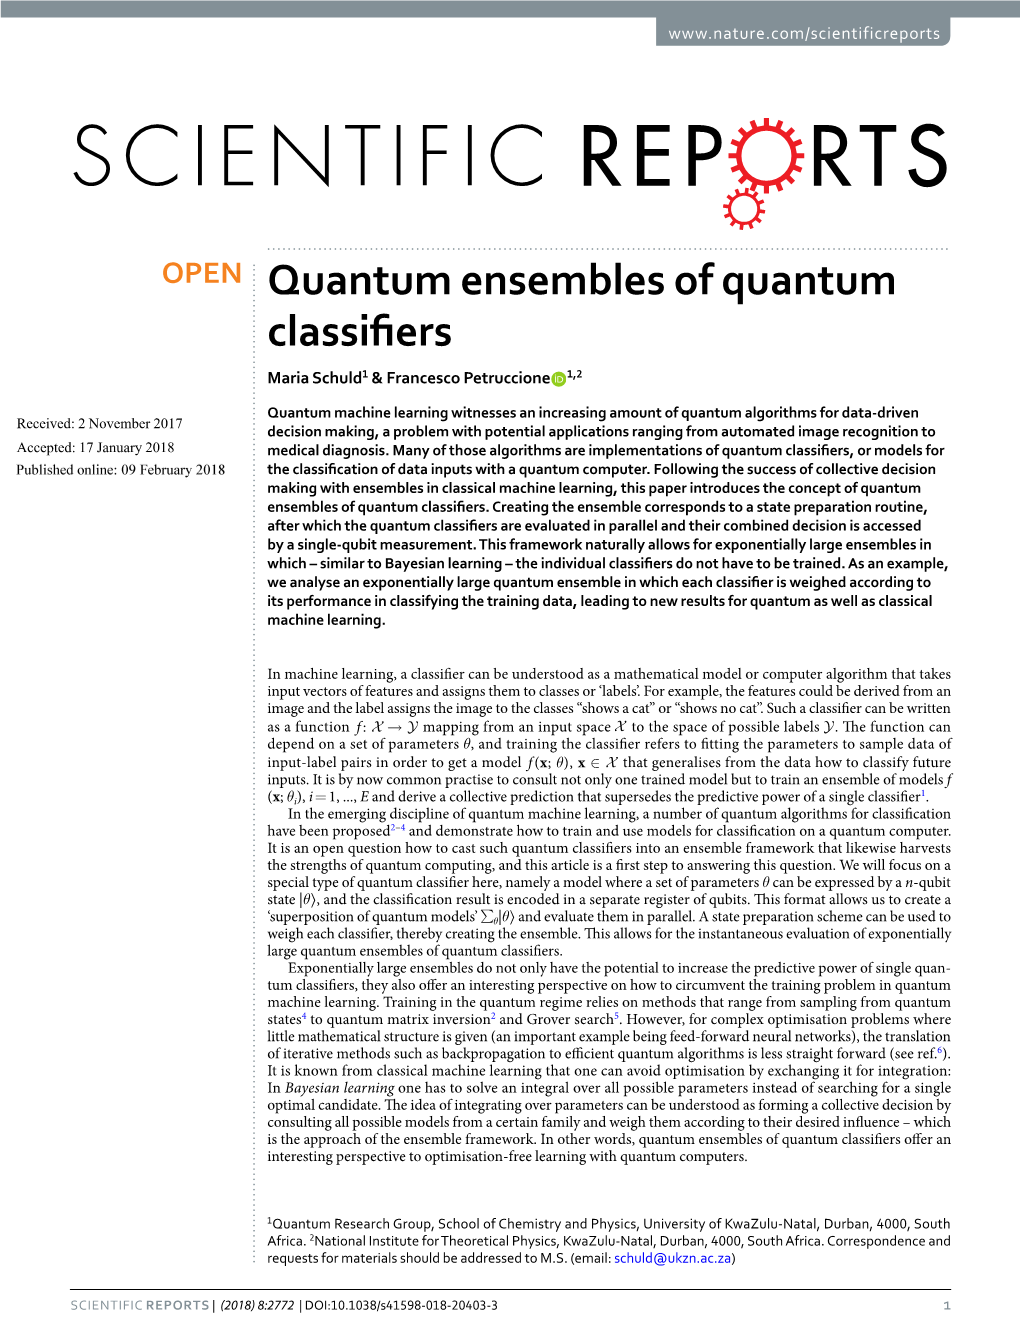 Quantum Ensembles of Quantum Classifiers